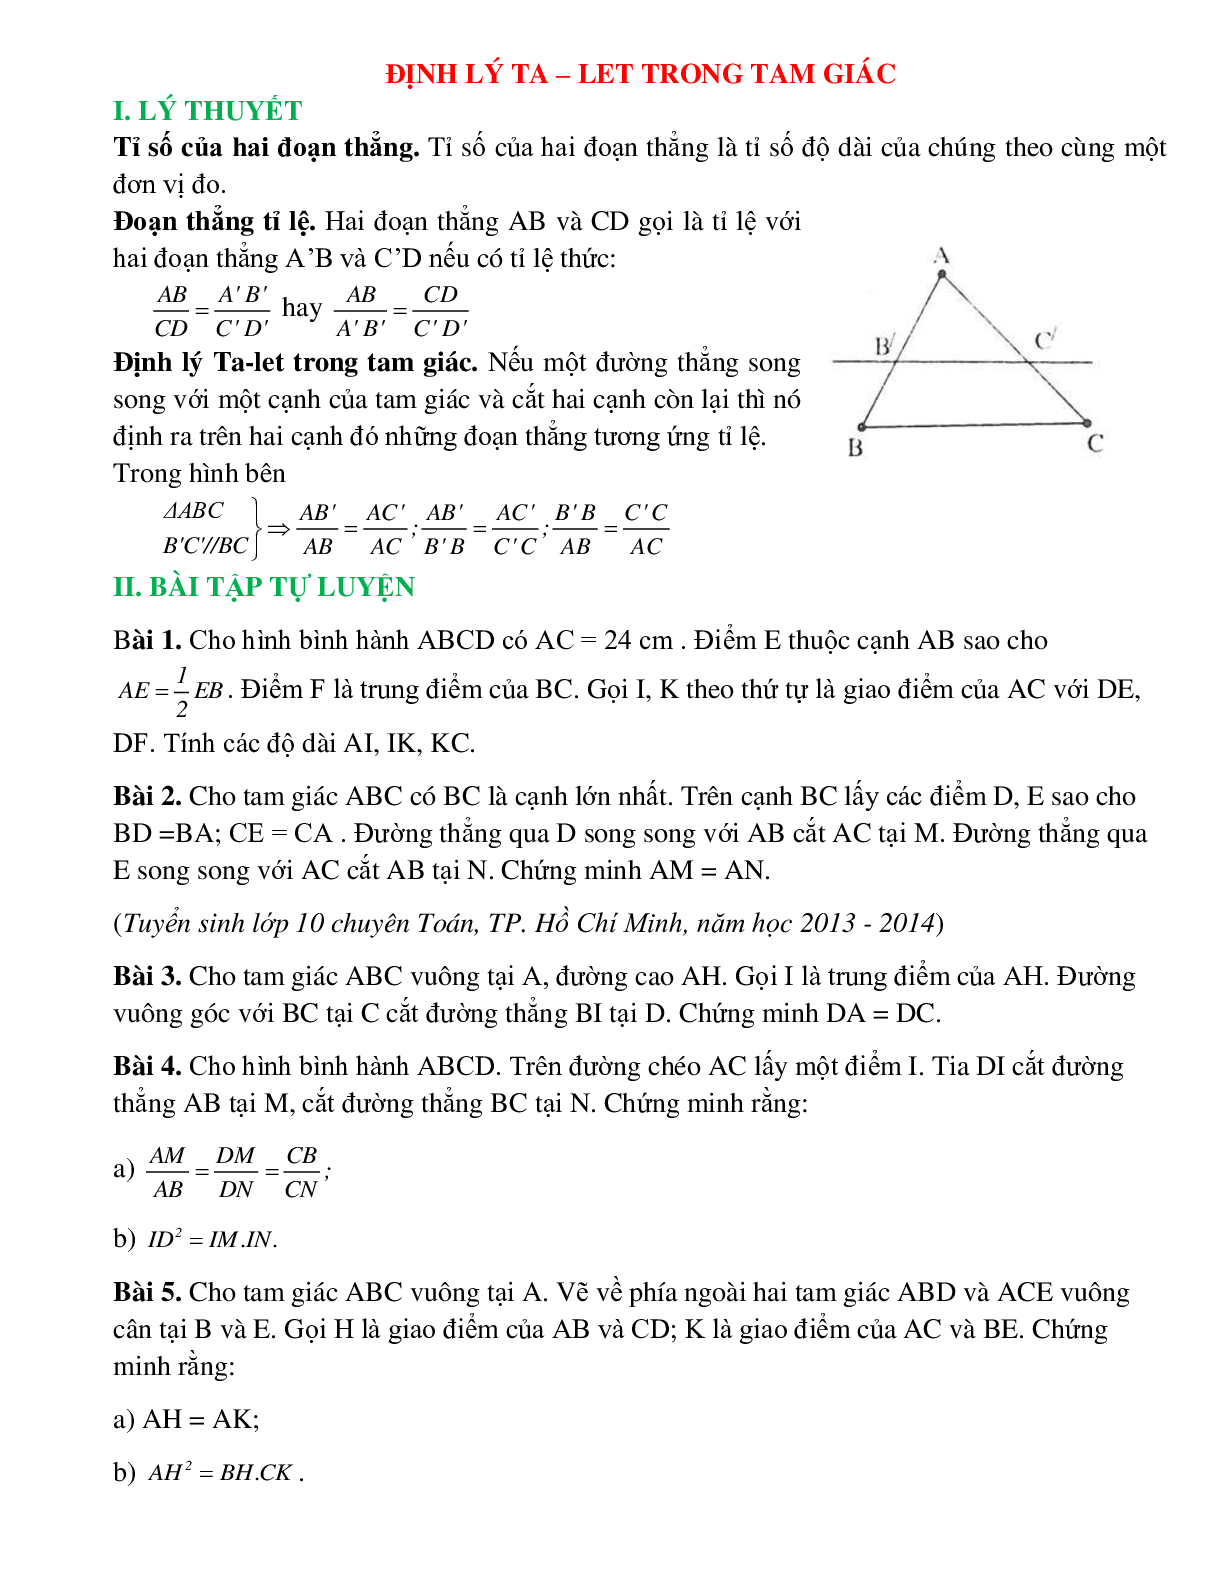 Định lí Talet trong tam giác (trang 1)